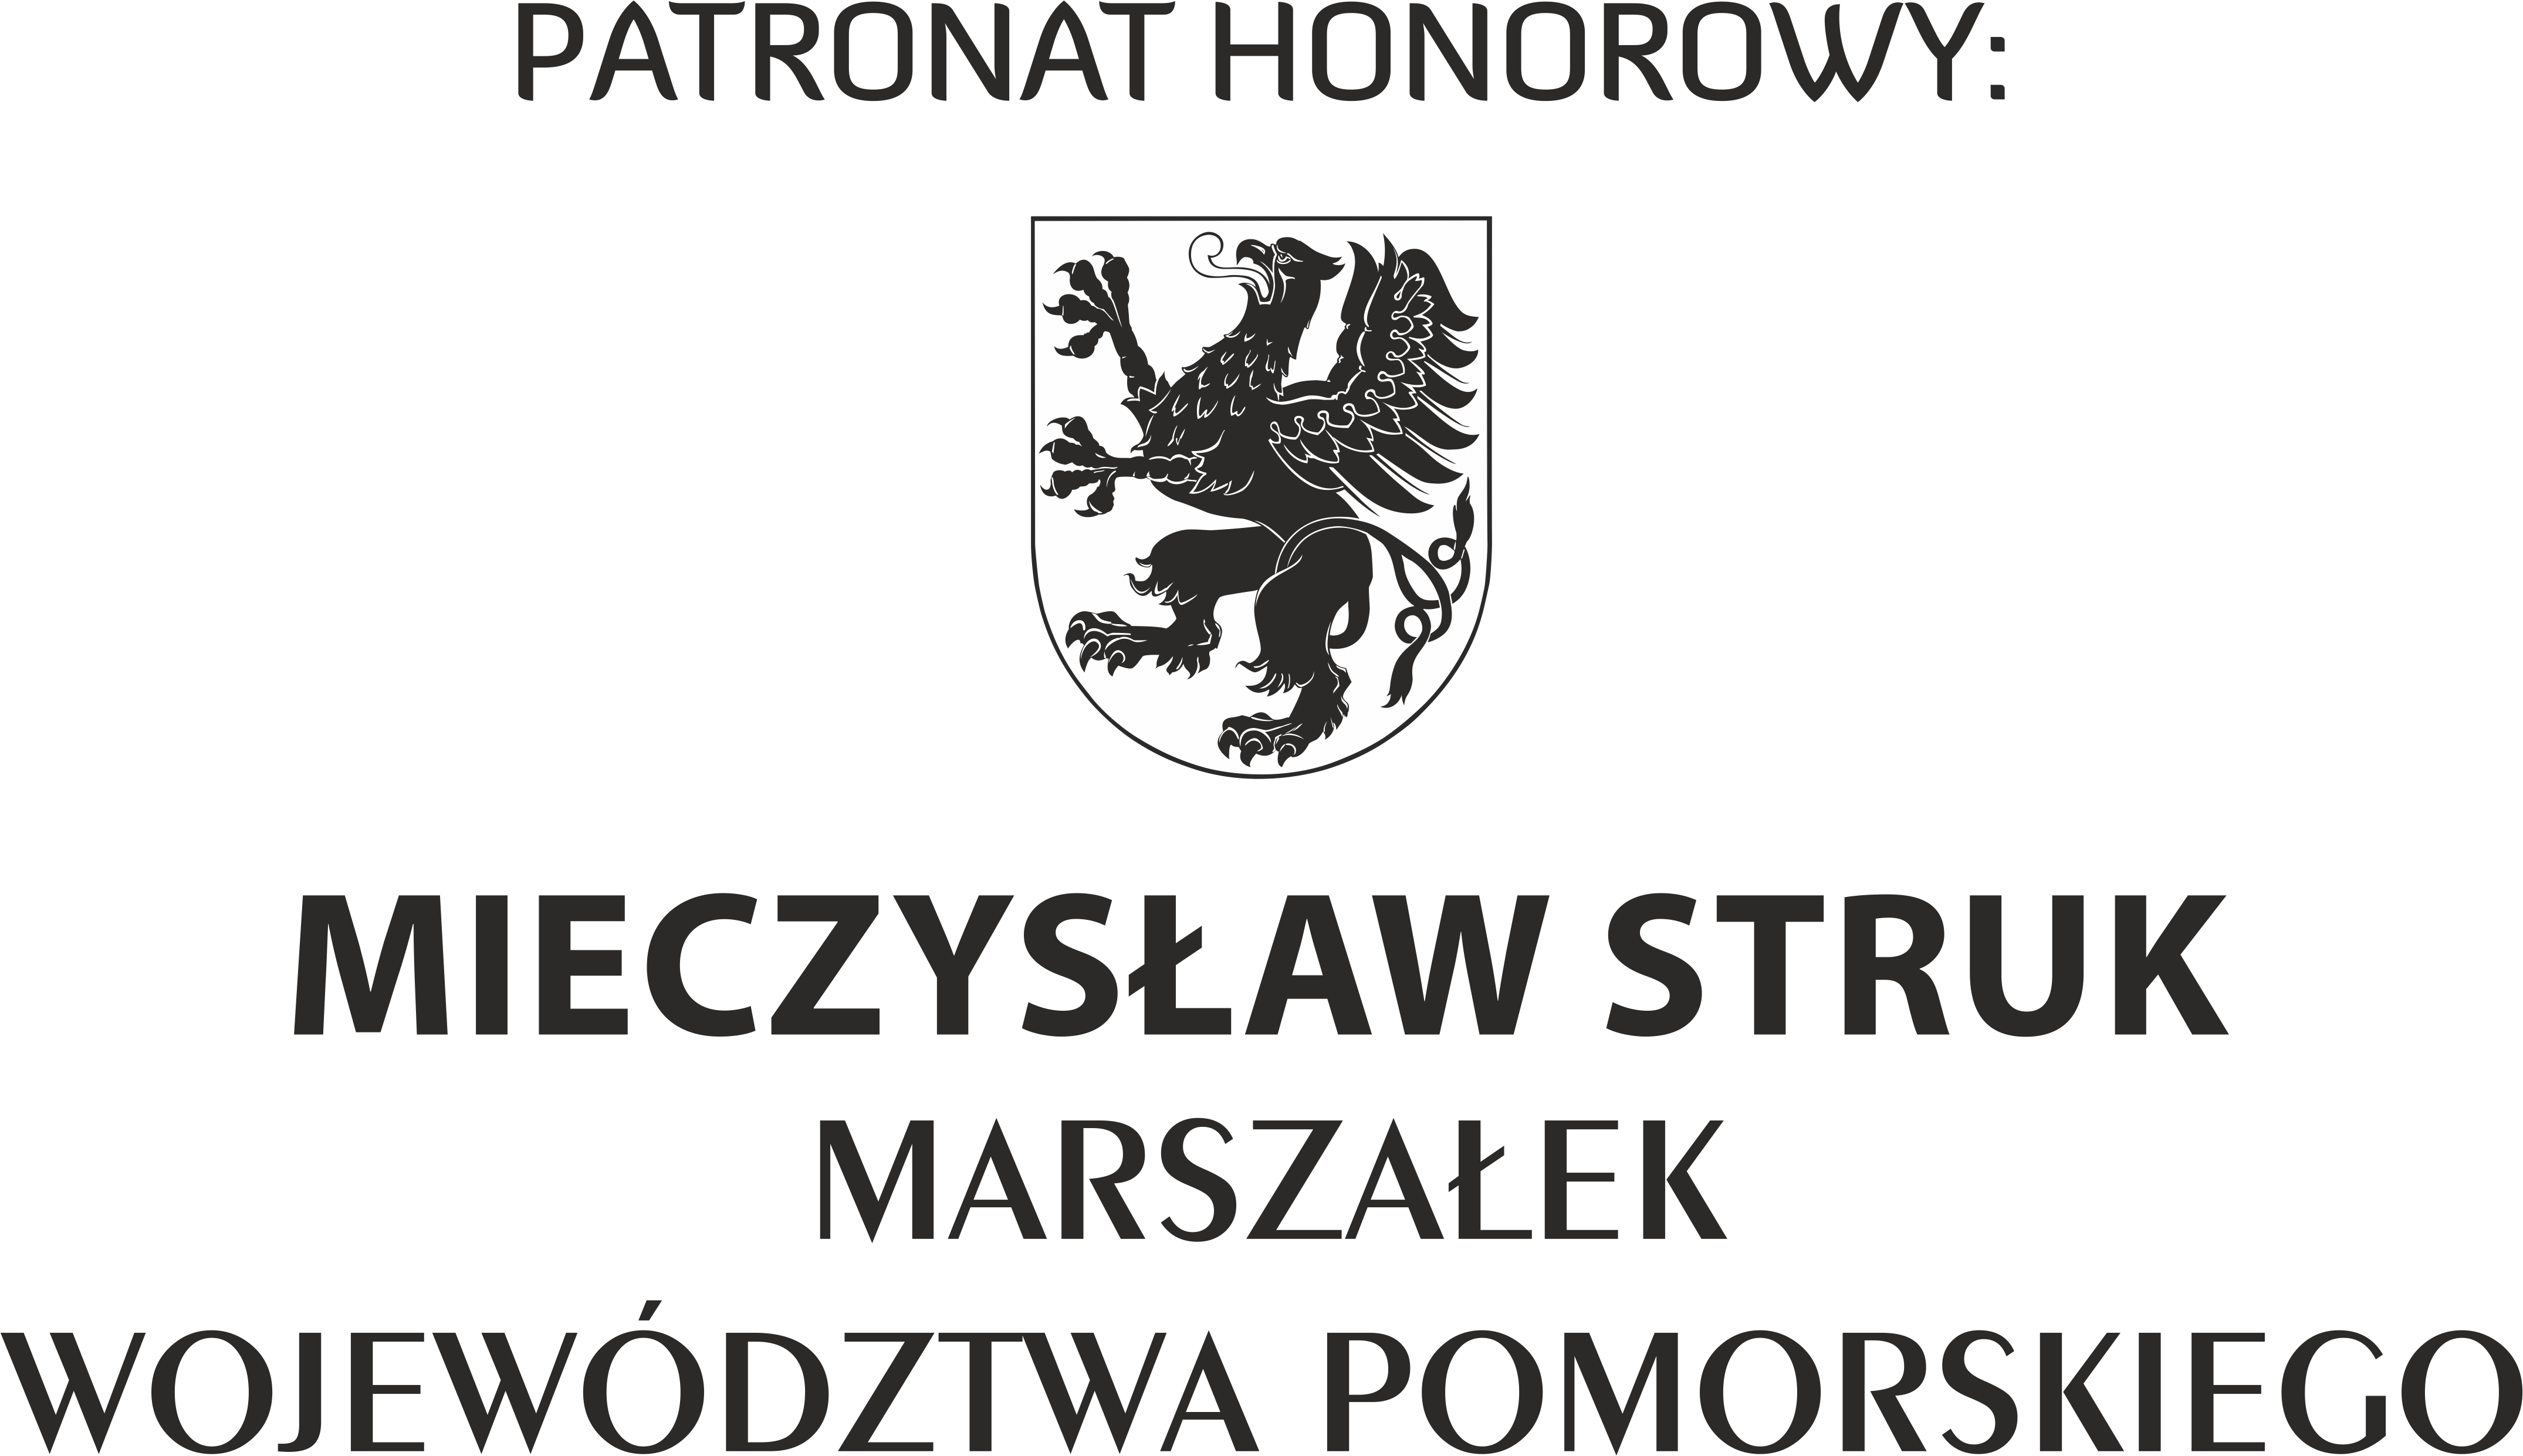 Mieczysław Struk, Marshal of the Pomeranian Voivodeship